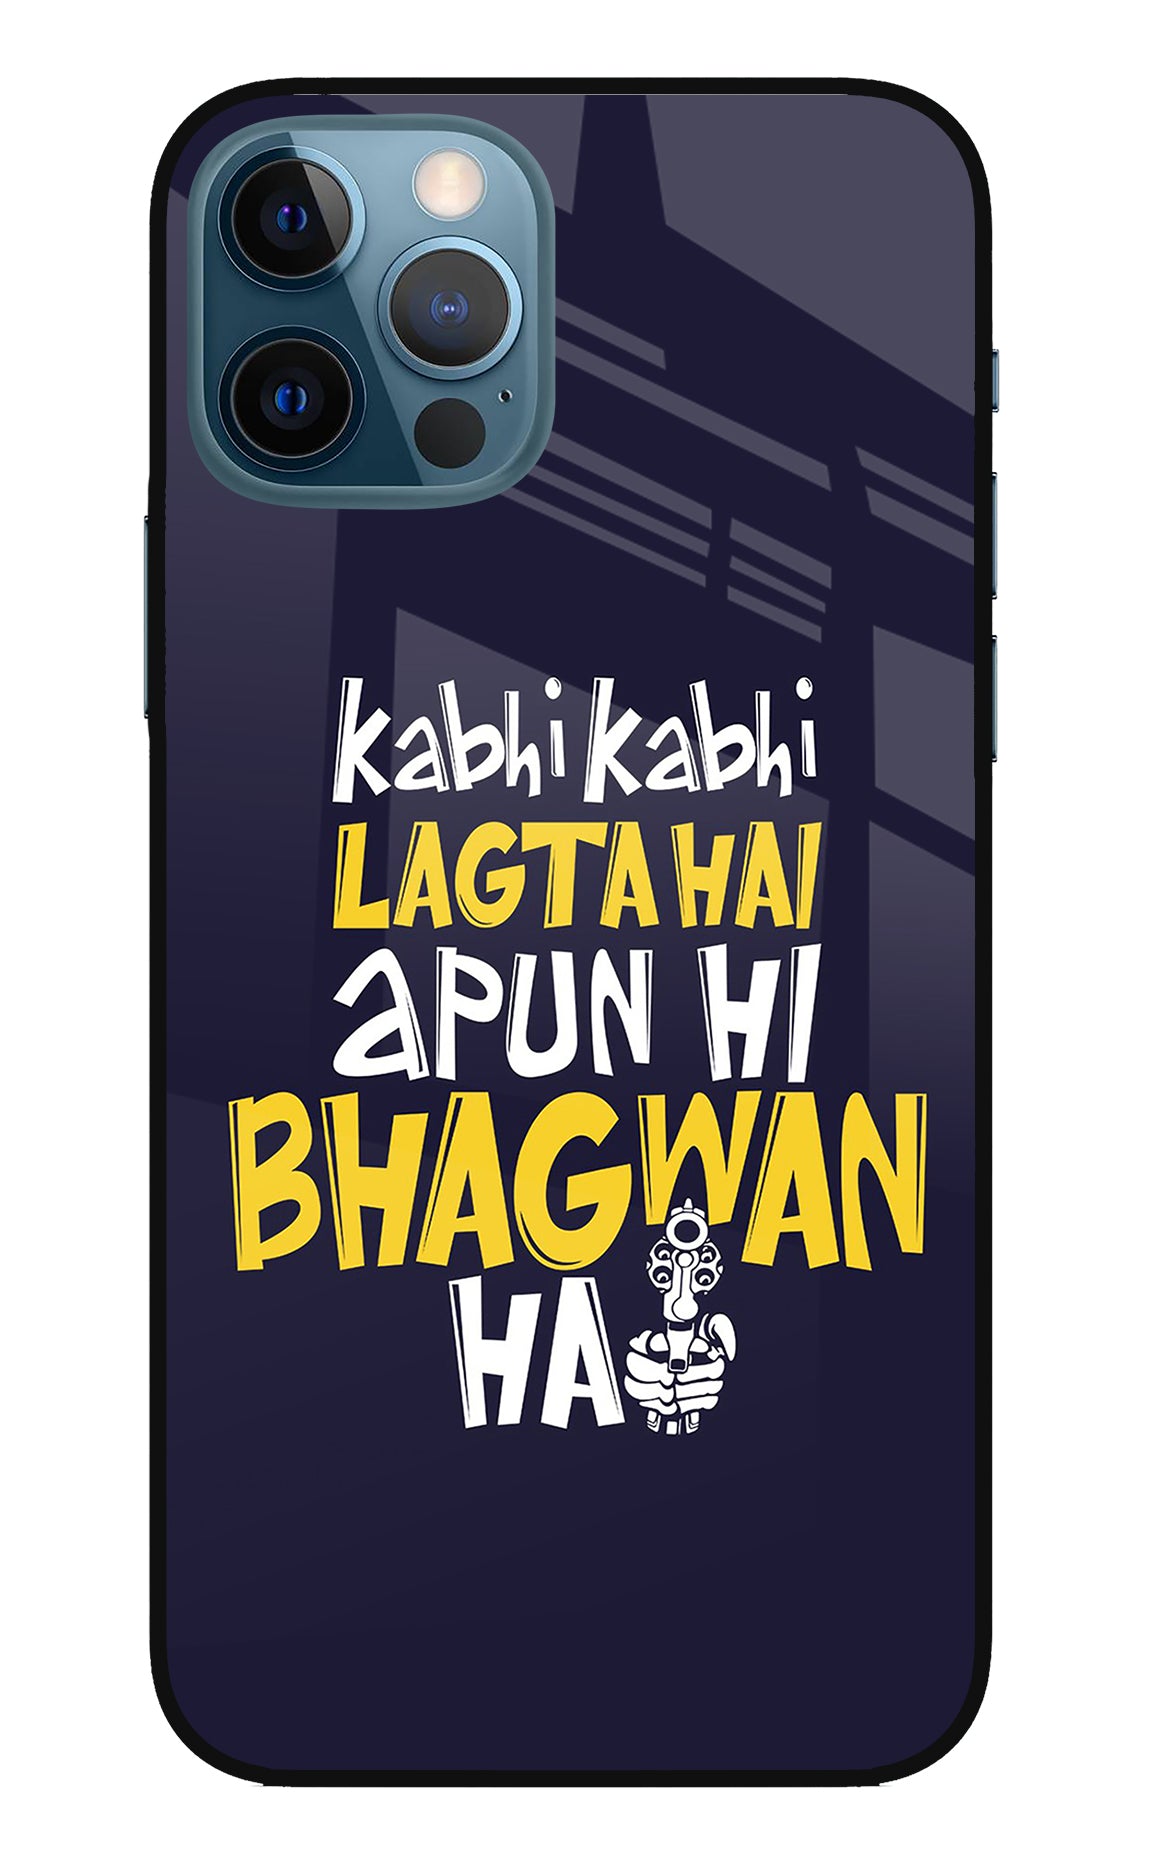 Kabhi Kabhi Lagta Hai Apun Hi Bhagwan Hai iPhone 12 Pro Back Cover